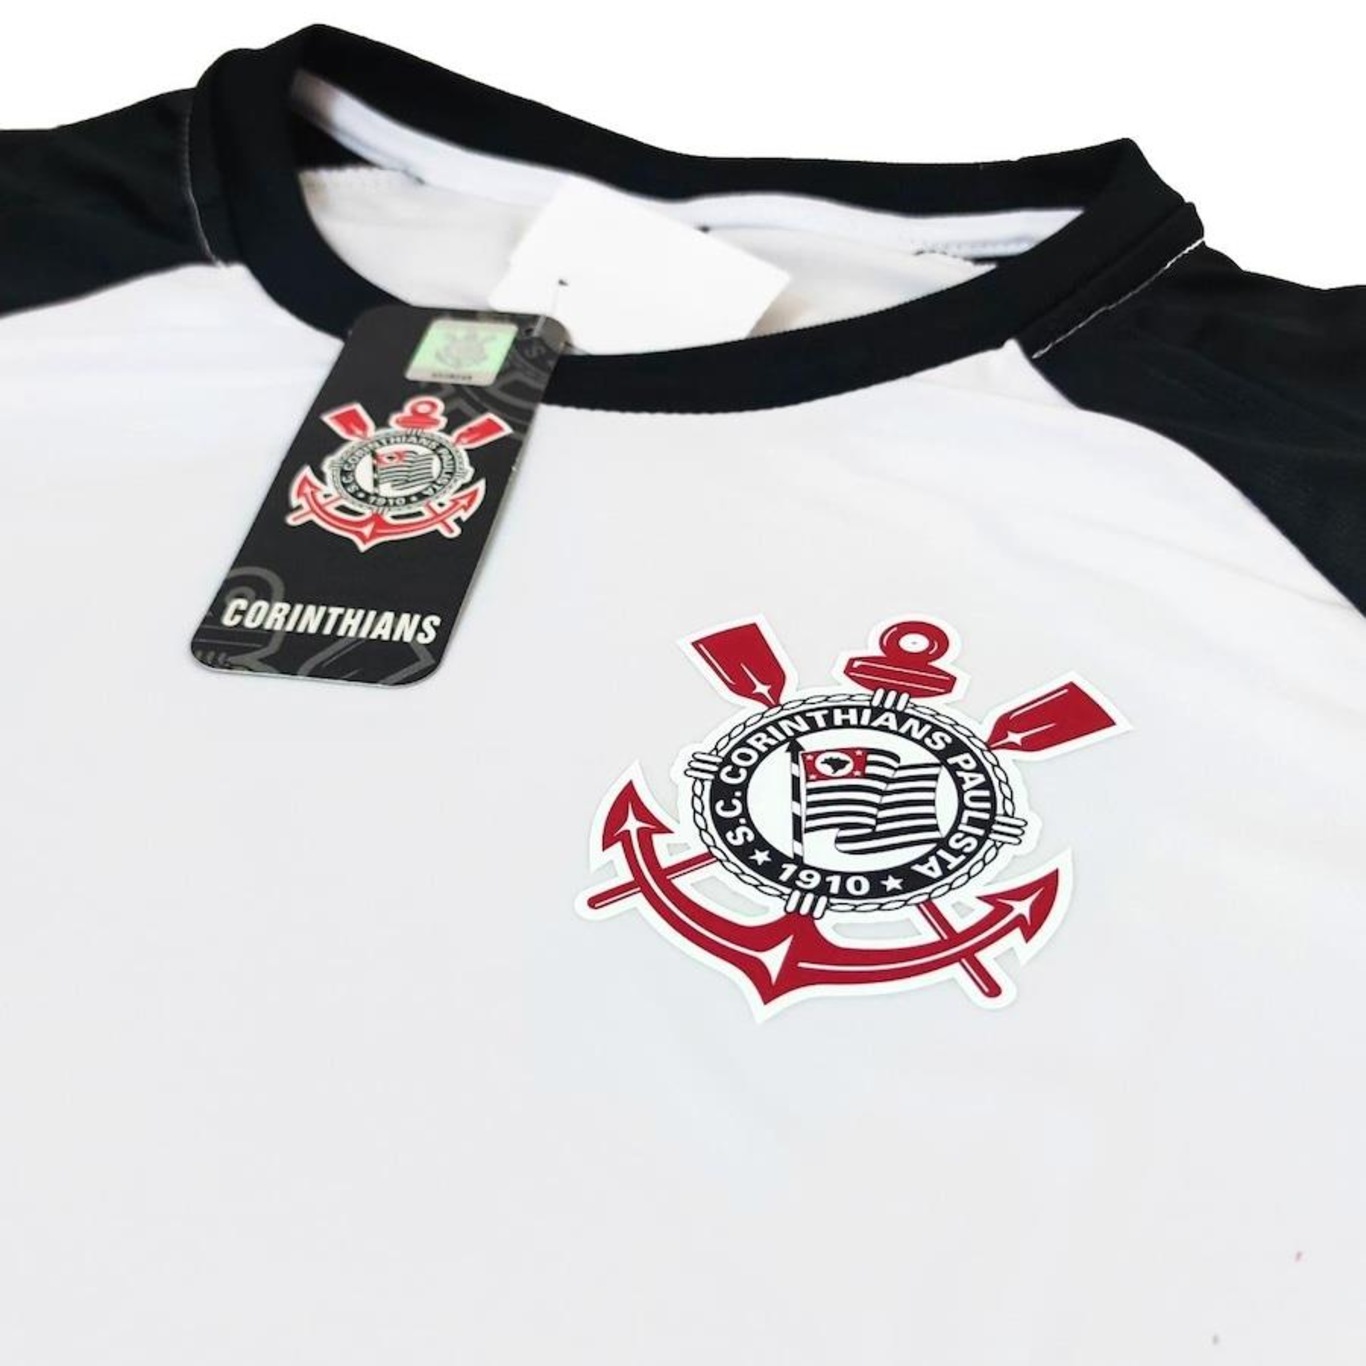 Camisa Corinthians Retro Mundial 2000 Batavo - Masculino - SPR